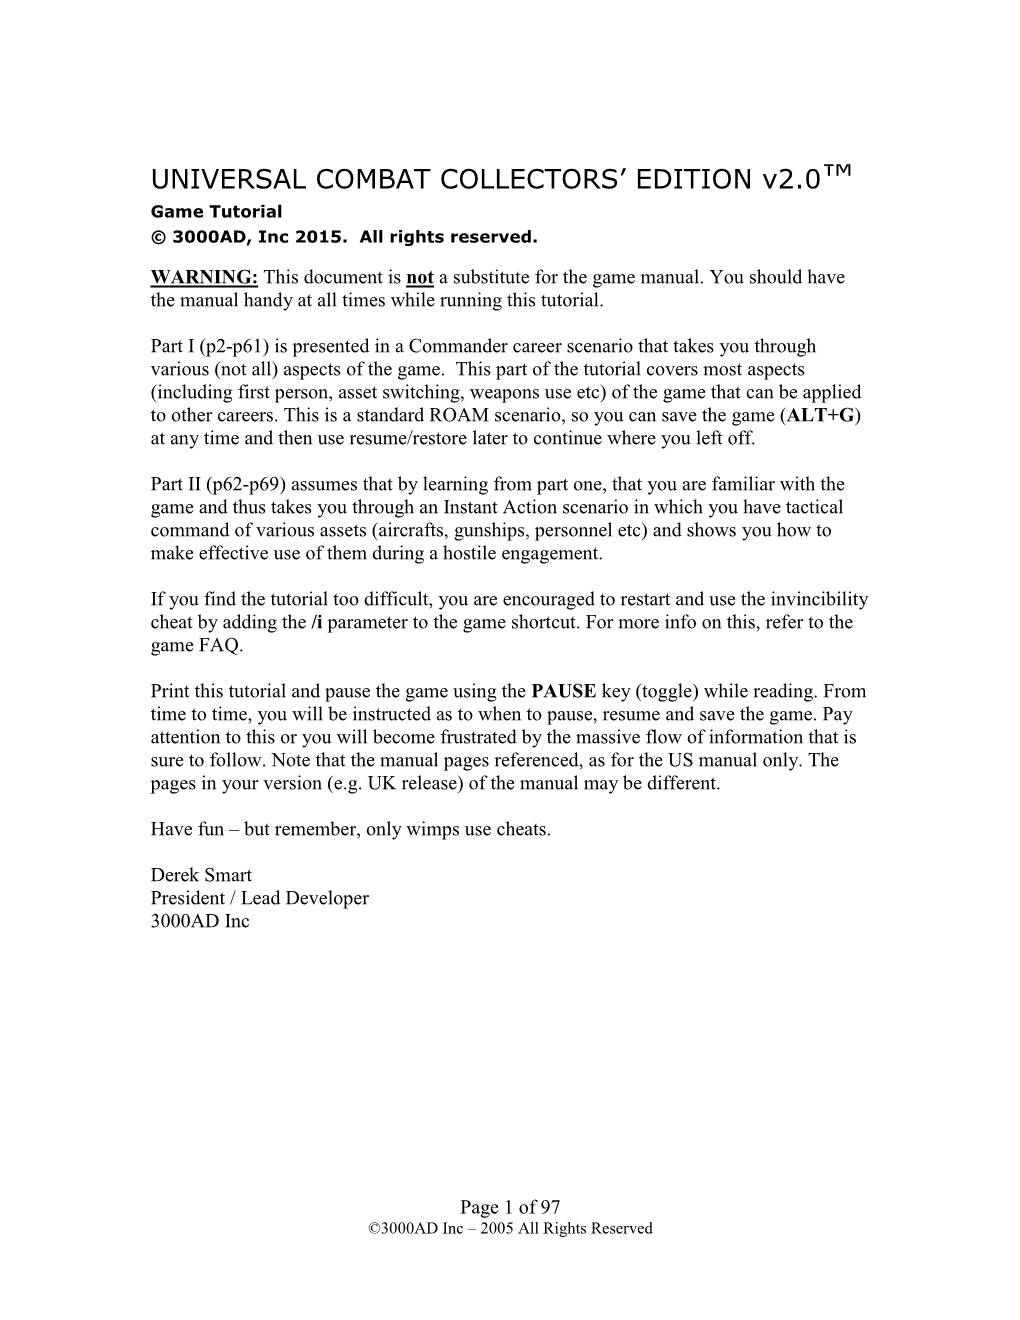 UNIVERSAL COMBAT COLLECTORS' EDITION V2.0™